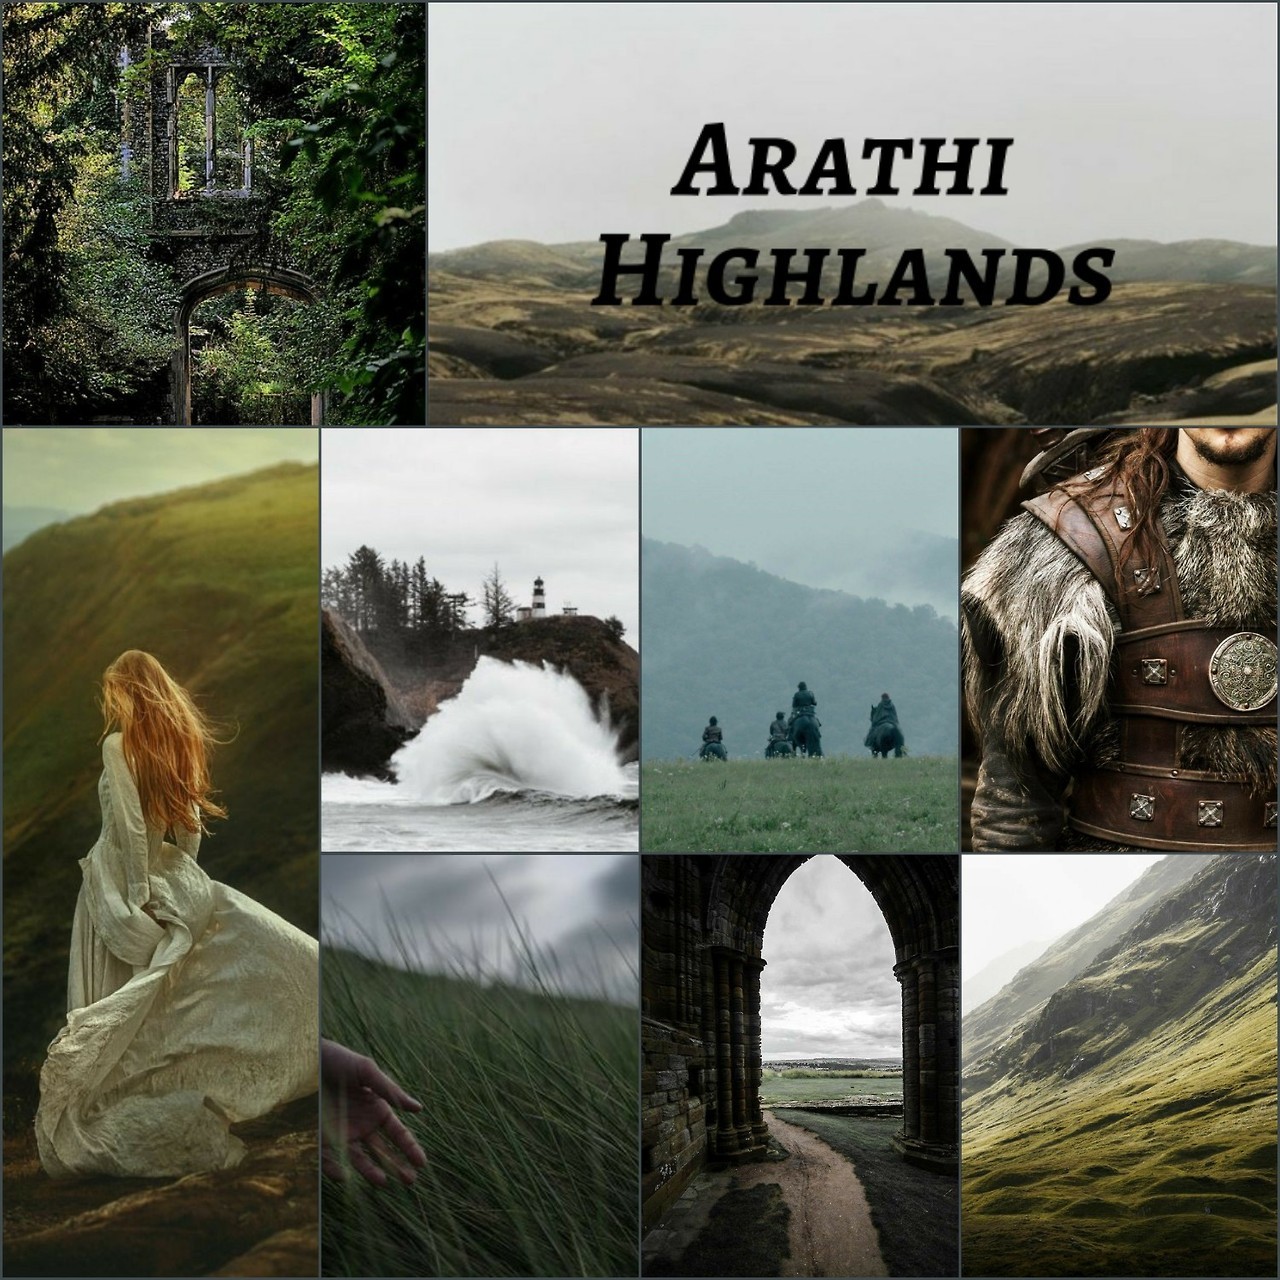 arathi highlands to hinterlands